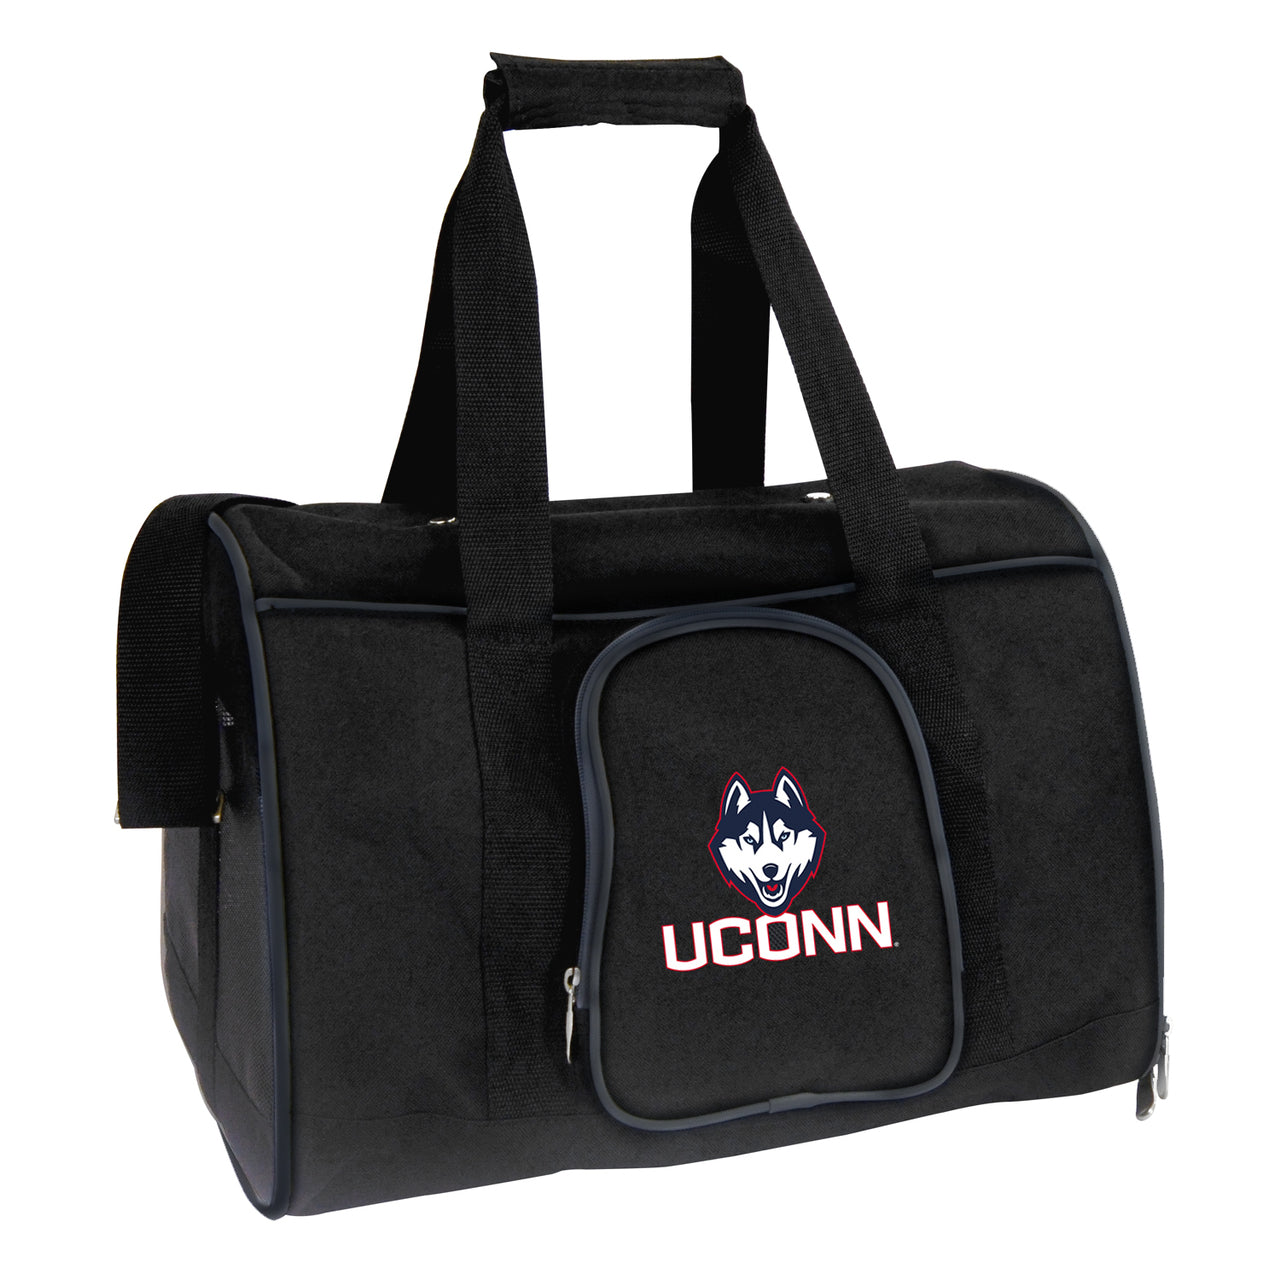 Uconn 16" Premium Pet Carrier